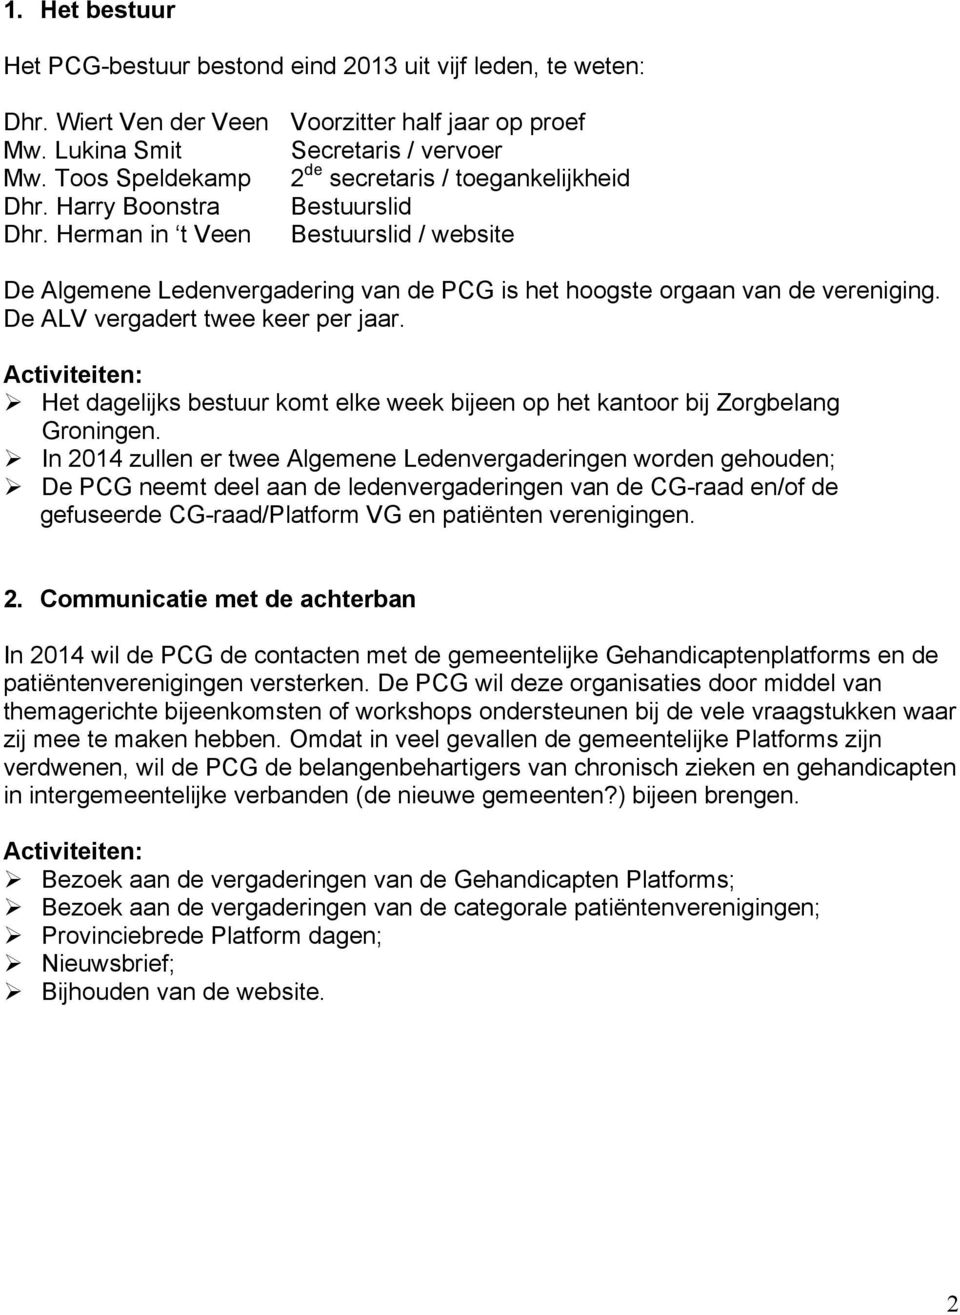 Herman in t Veen Bestuurslid / website De Algemene Ledenvergadering van de PCG is het hoogste orgaan van de vereniging. De ALV vergadert twee keer per jaar.